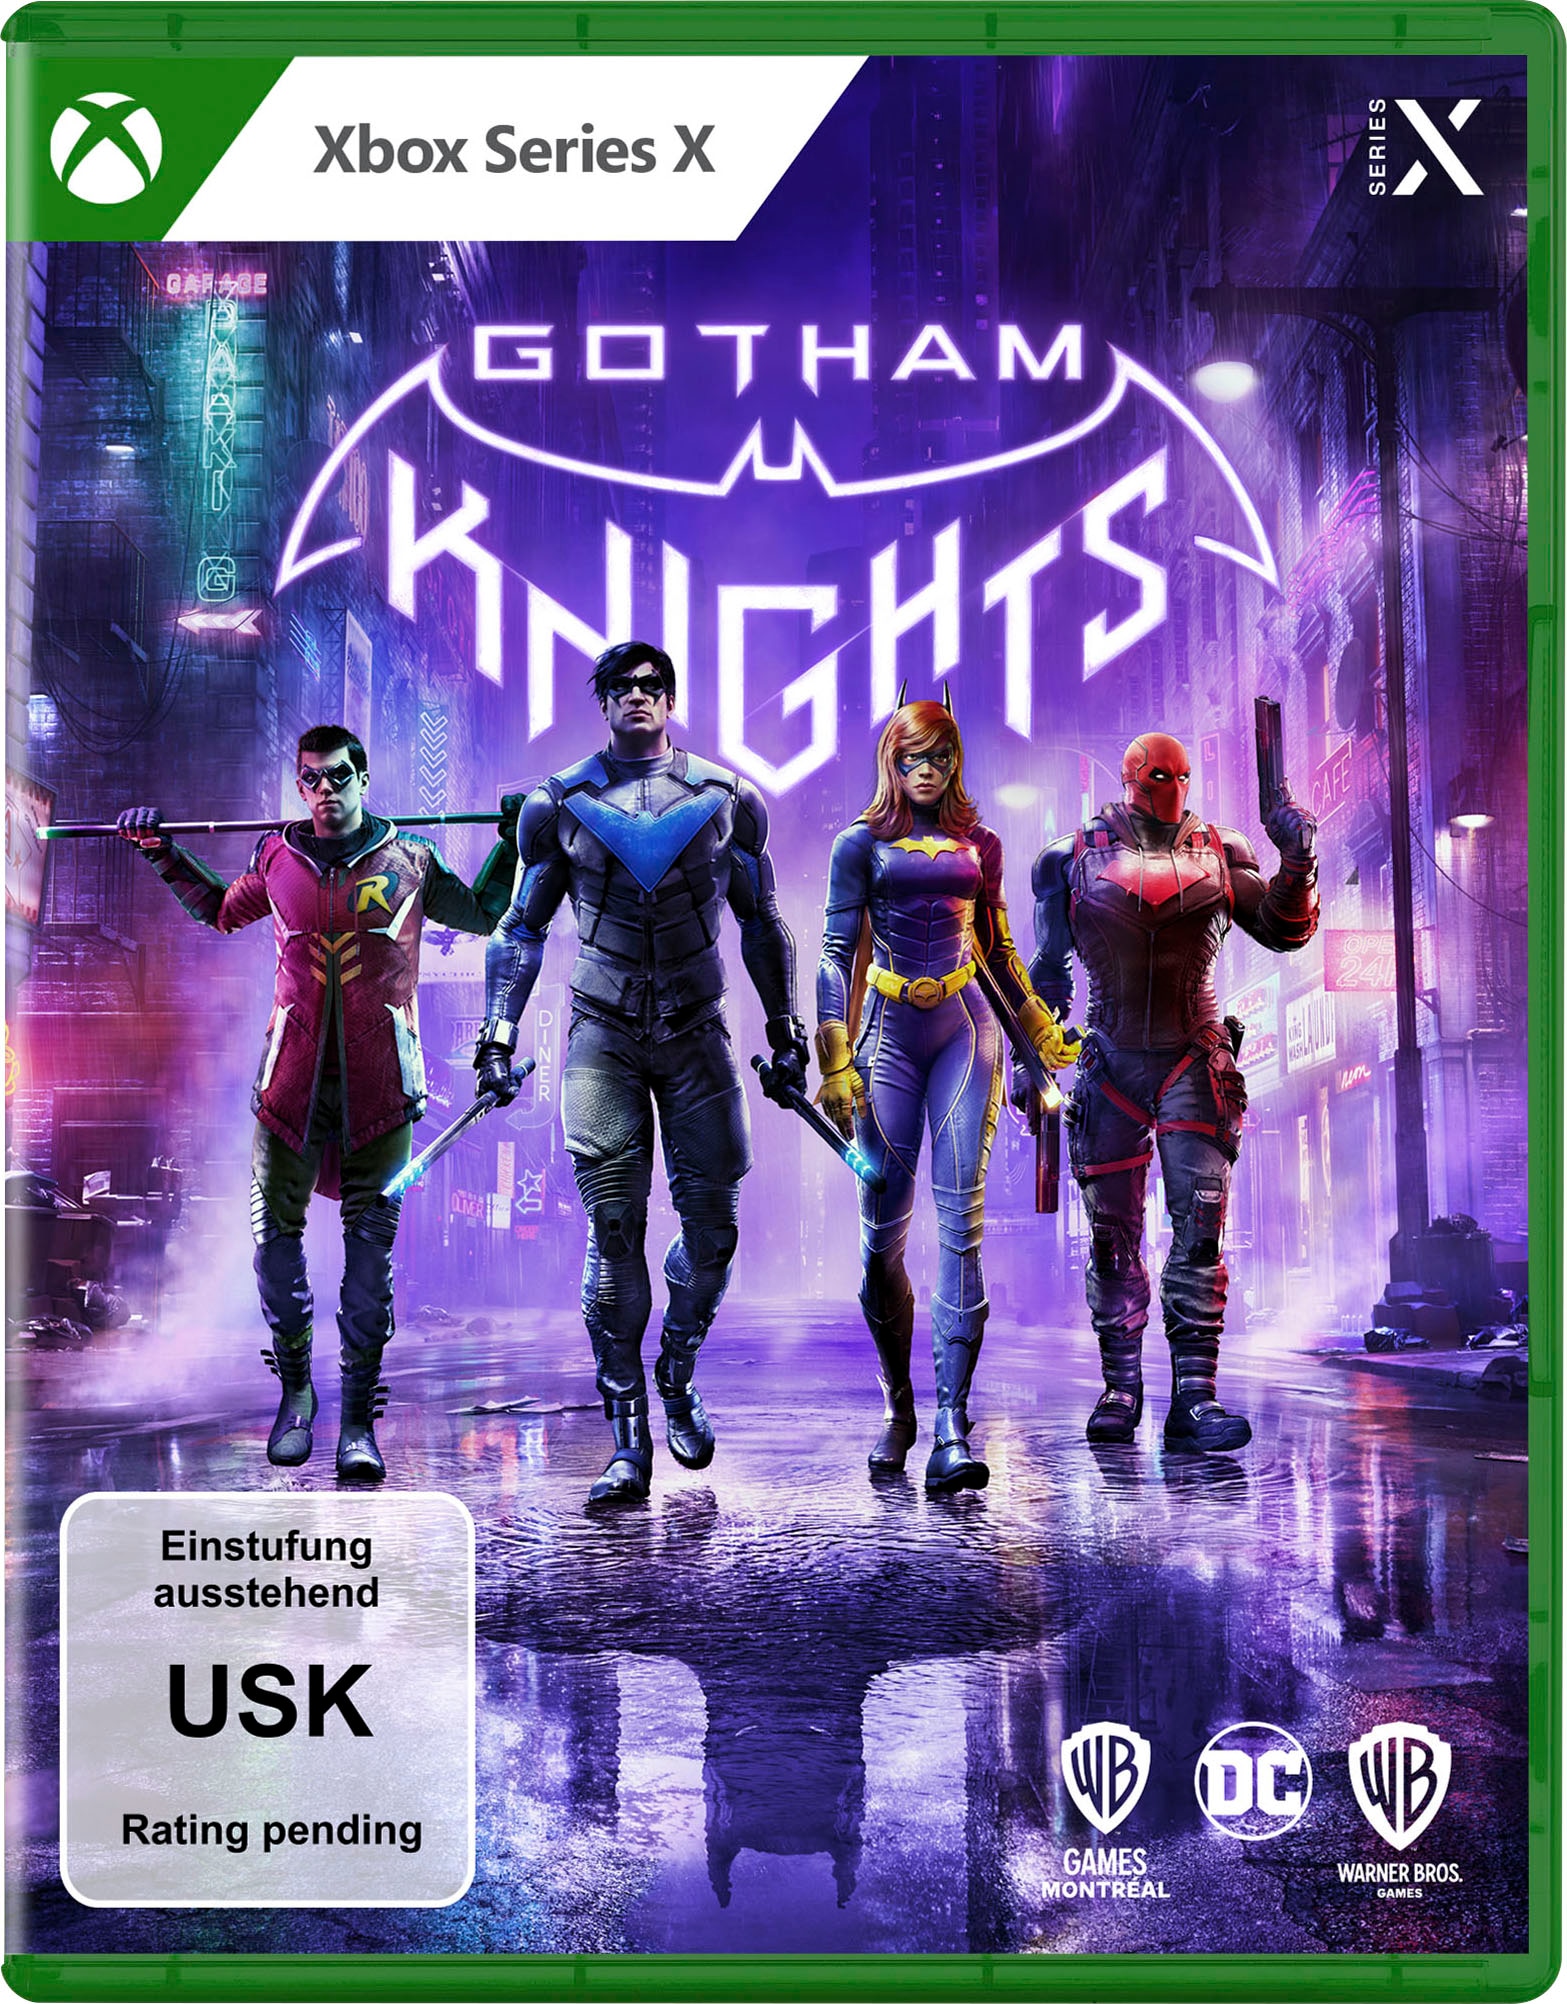 Spielesoftware »Gotham Knights«, Xbox Series X